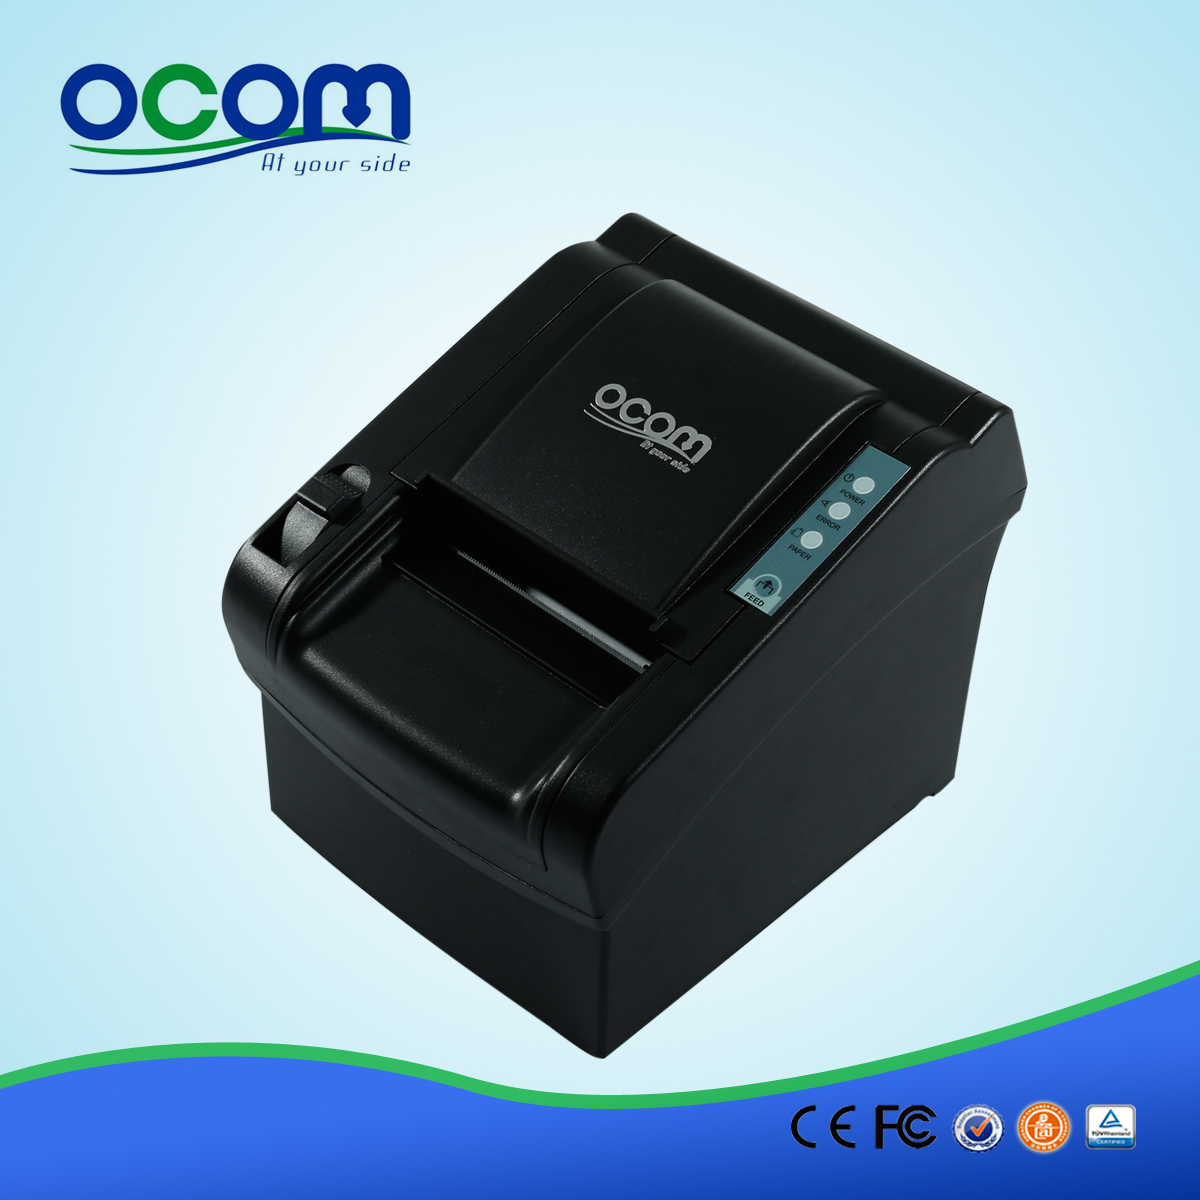 OCPP-802: pos d'approvisionnement module d'imprimante thermique, 80mm imprimante ticket thermique